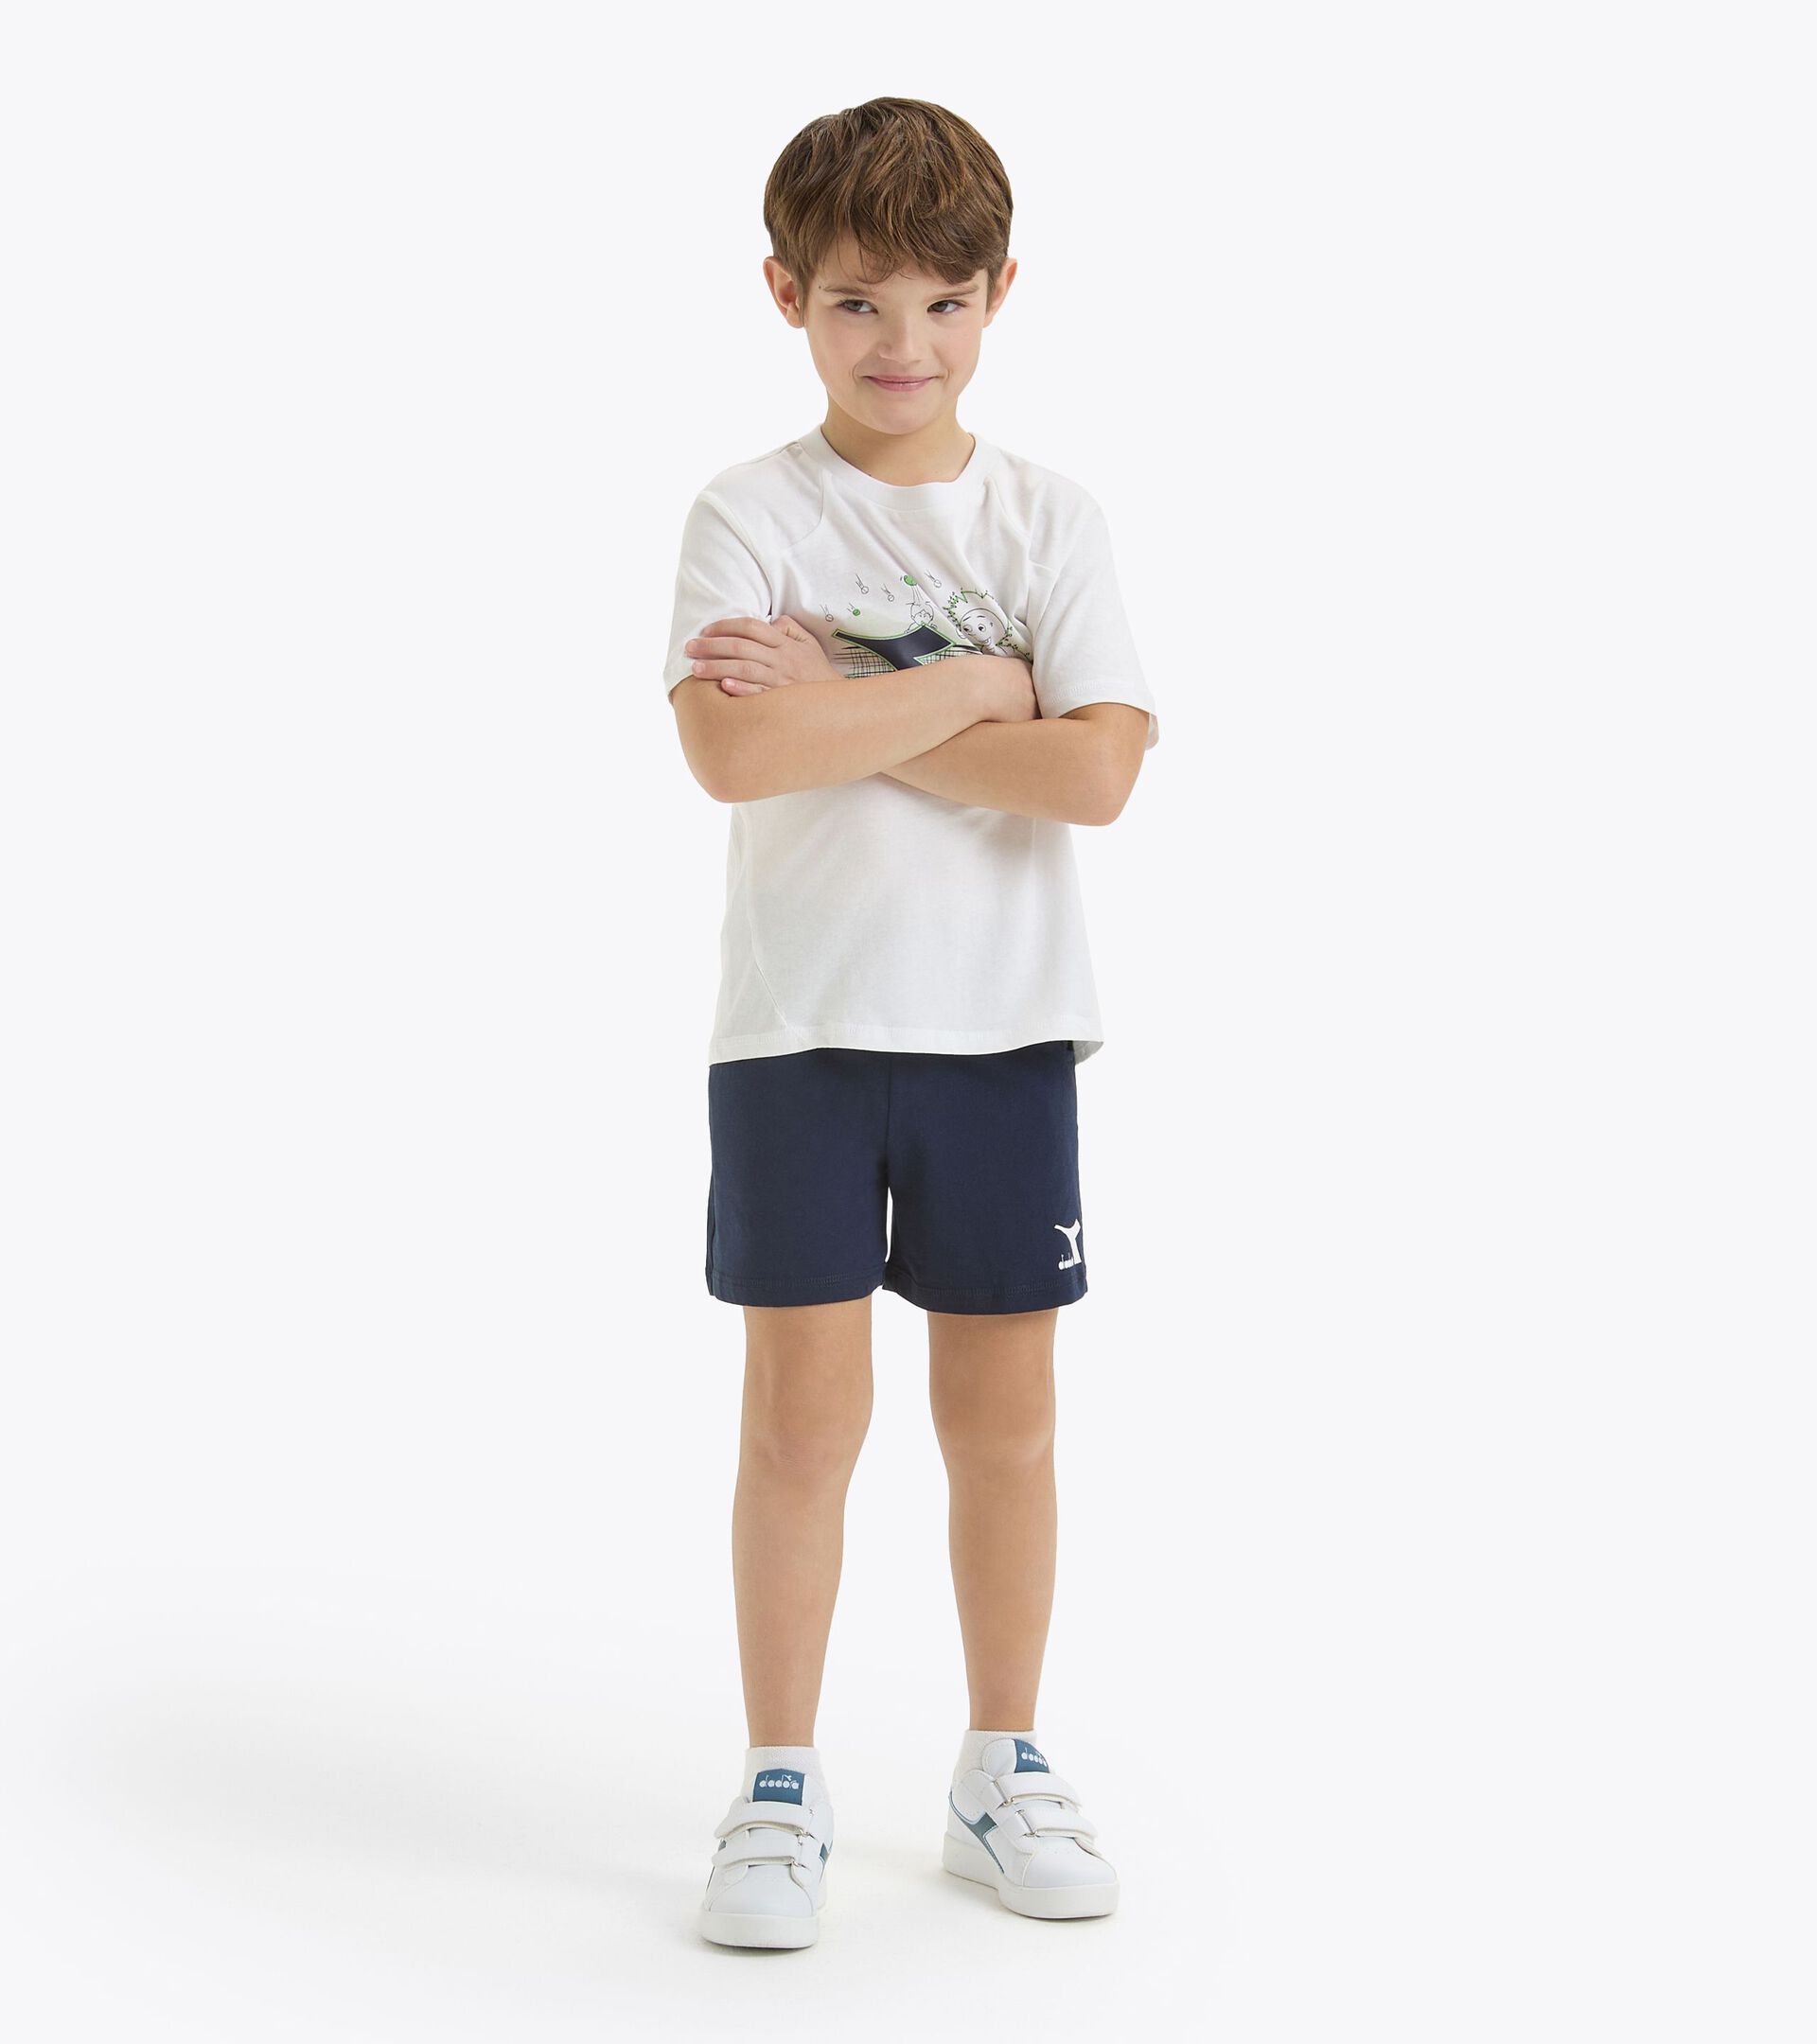 Conjunto deportivo - Camiseta y pantalones cortos - Niños y adolescentes
 JB. SET SS RIDDLE BLANCO VIVO - Diadora